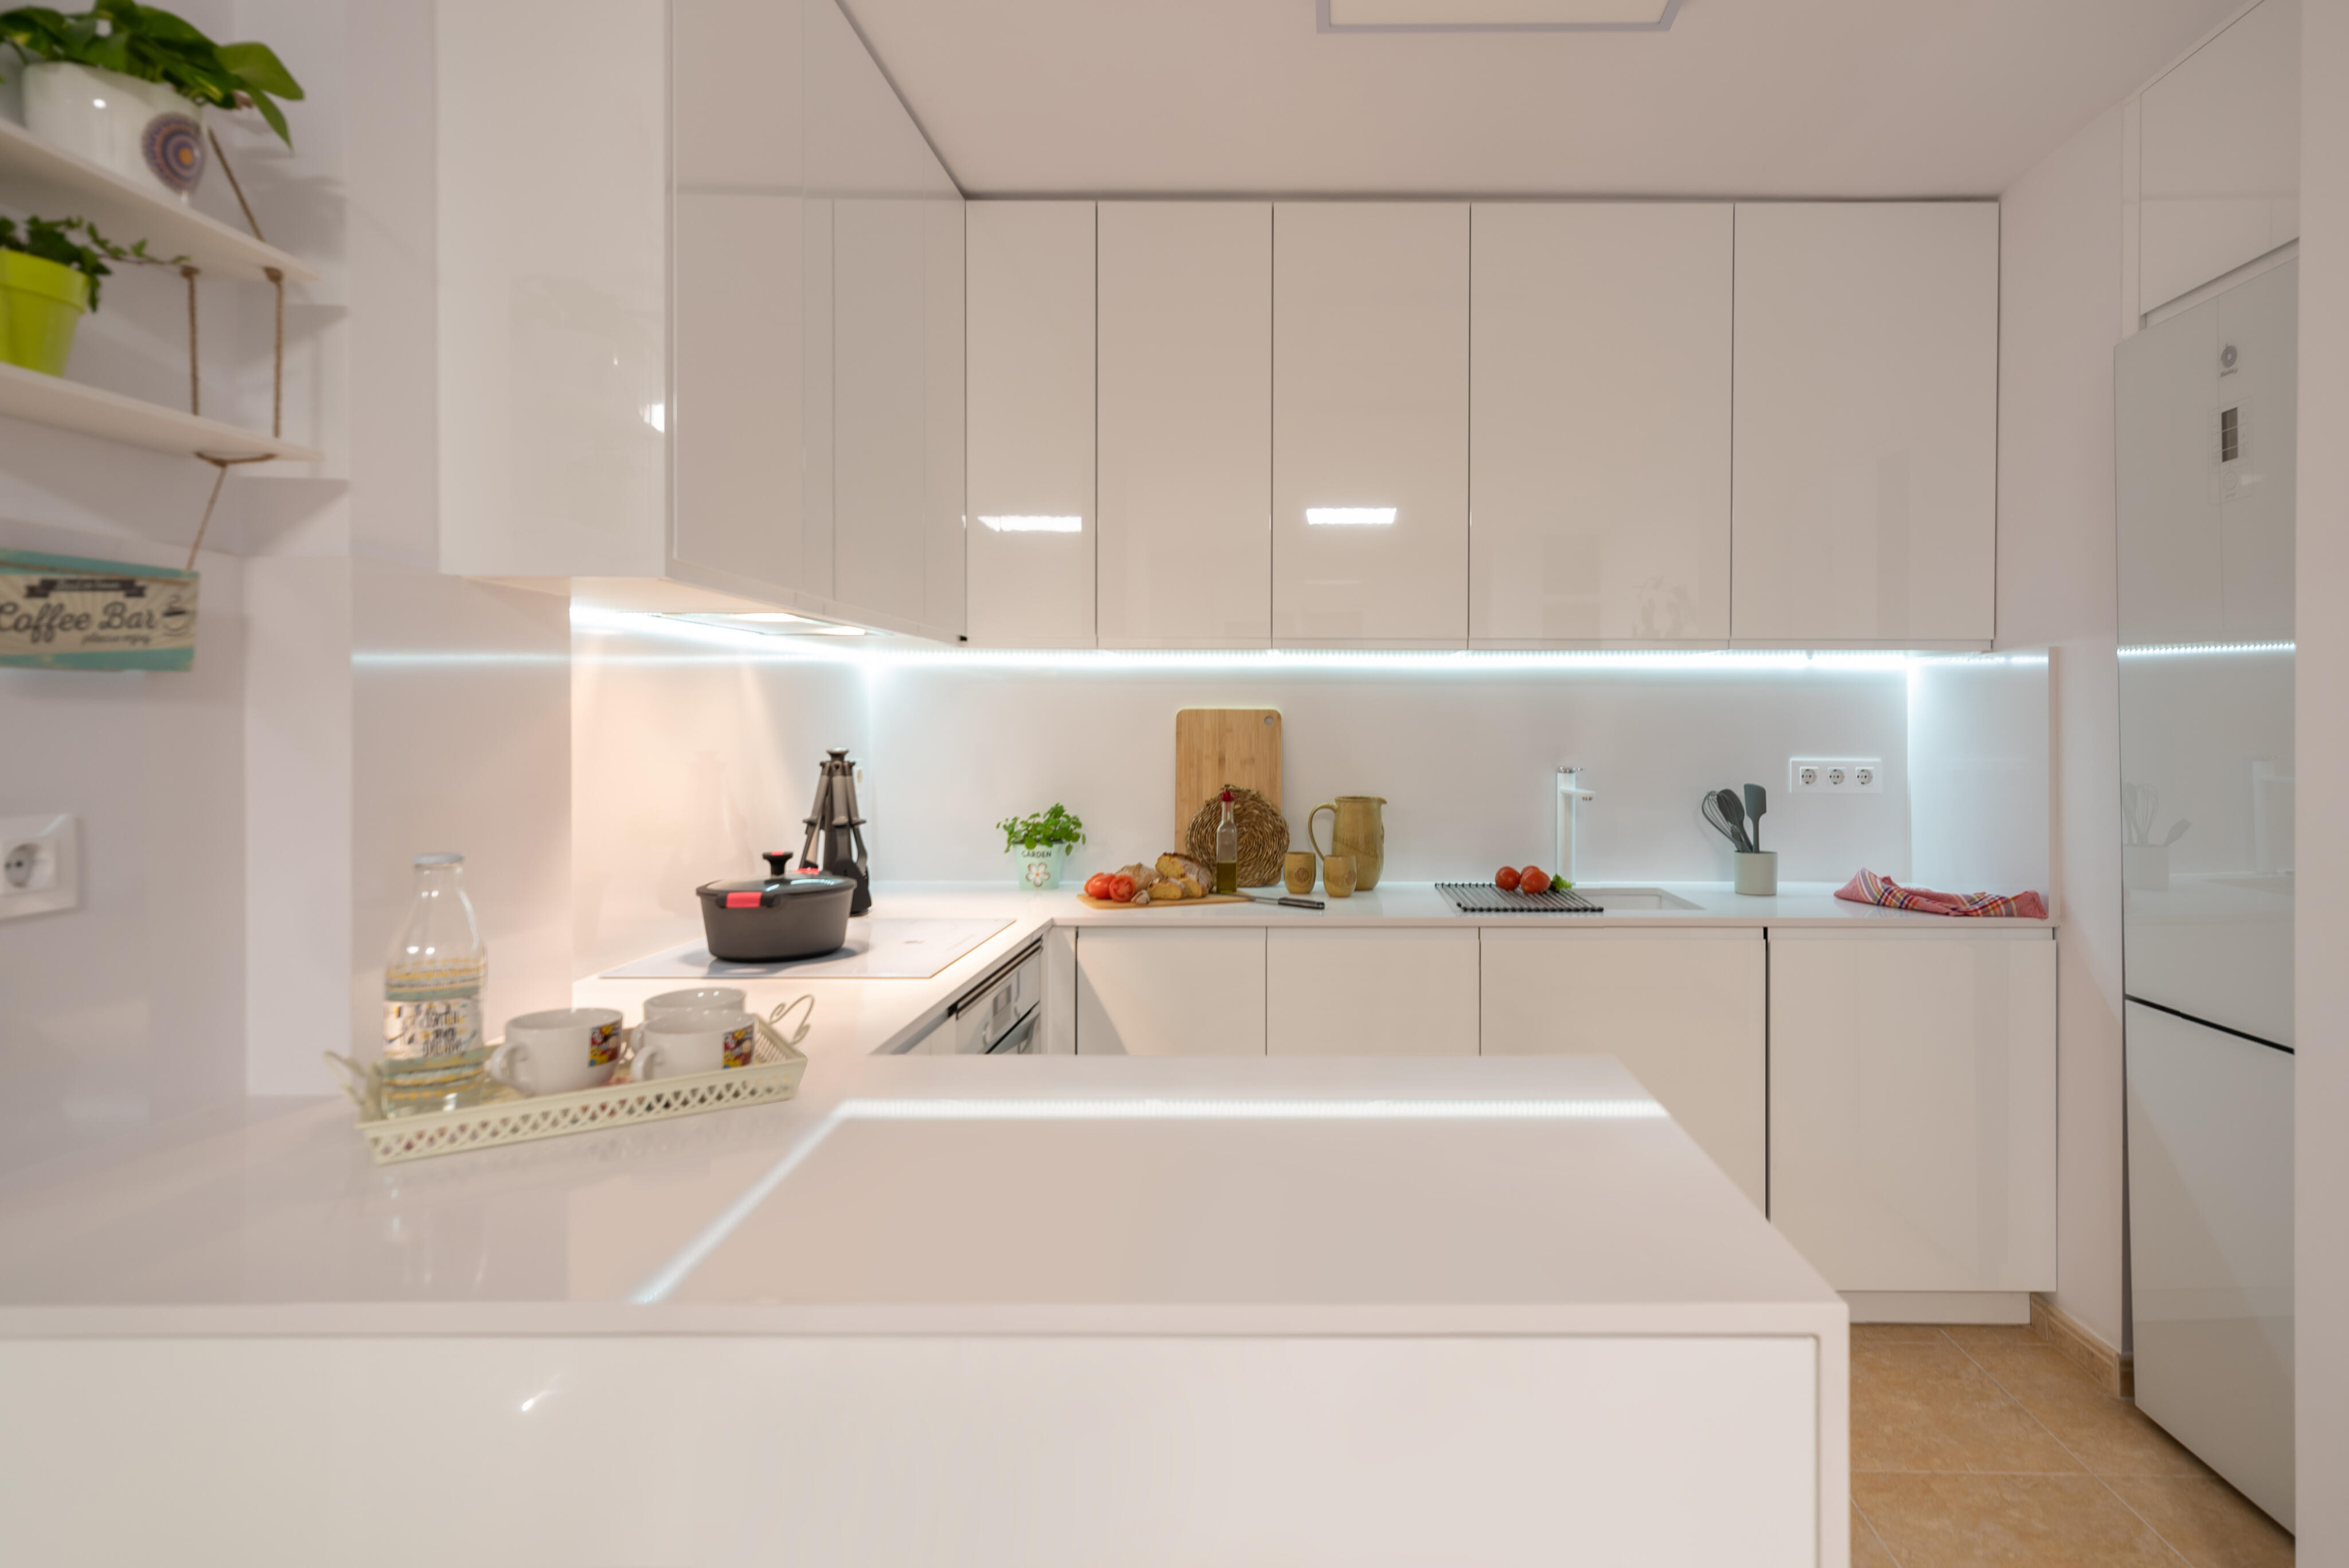 microondas mueble alto junto a frigo  Kitchen interior design modern,  Kitchen decor modern, Modern kitchen interiors